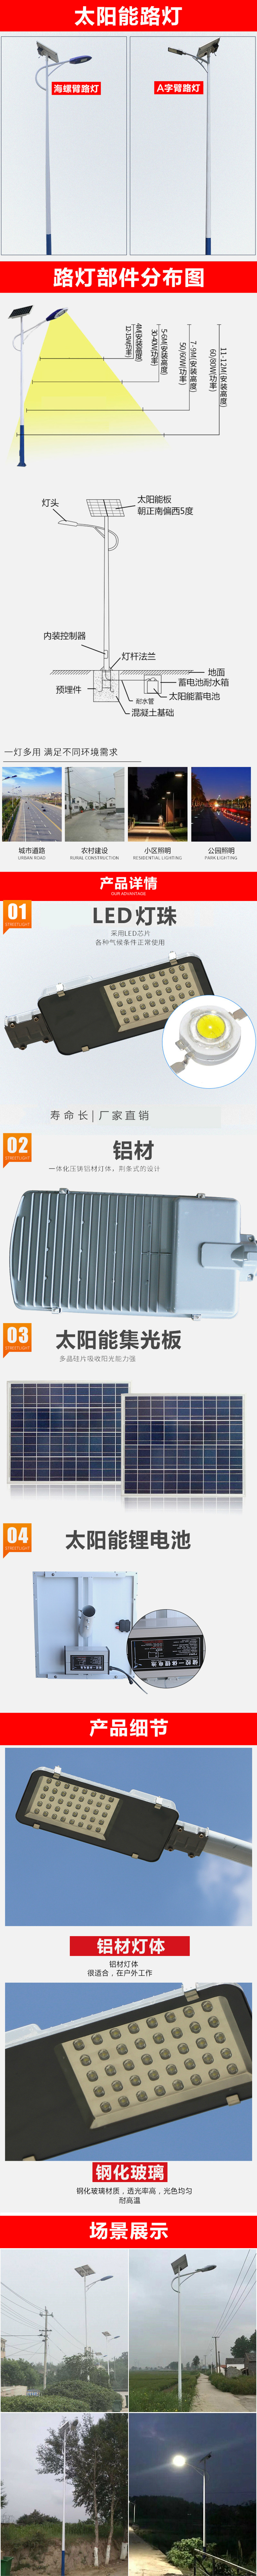 厂家直销LED太阳能路灯 30W农村户外照明LED太阳能路灯 可定制示例图14